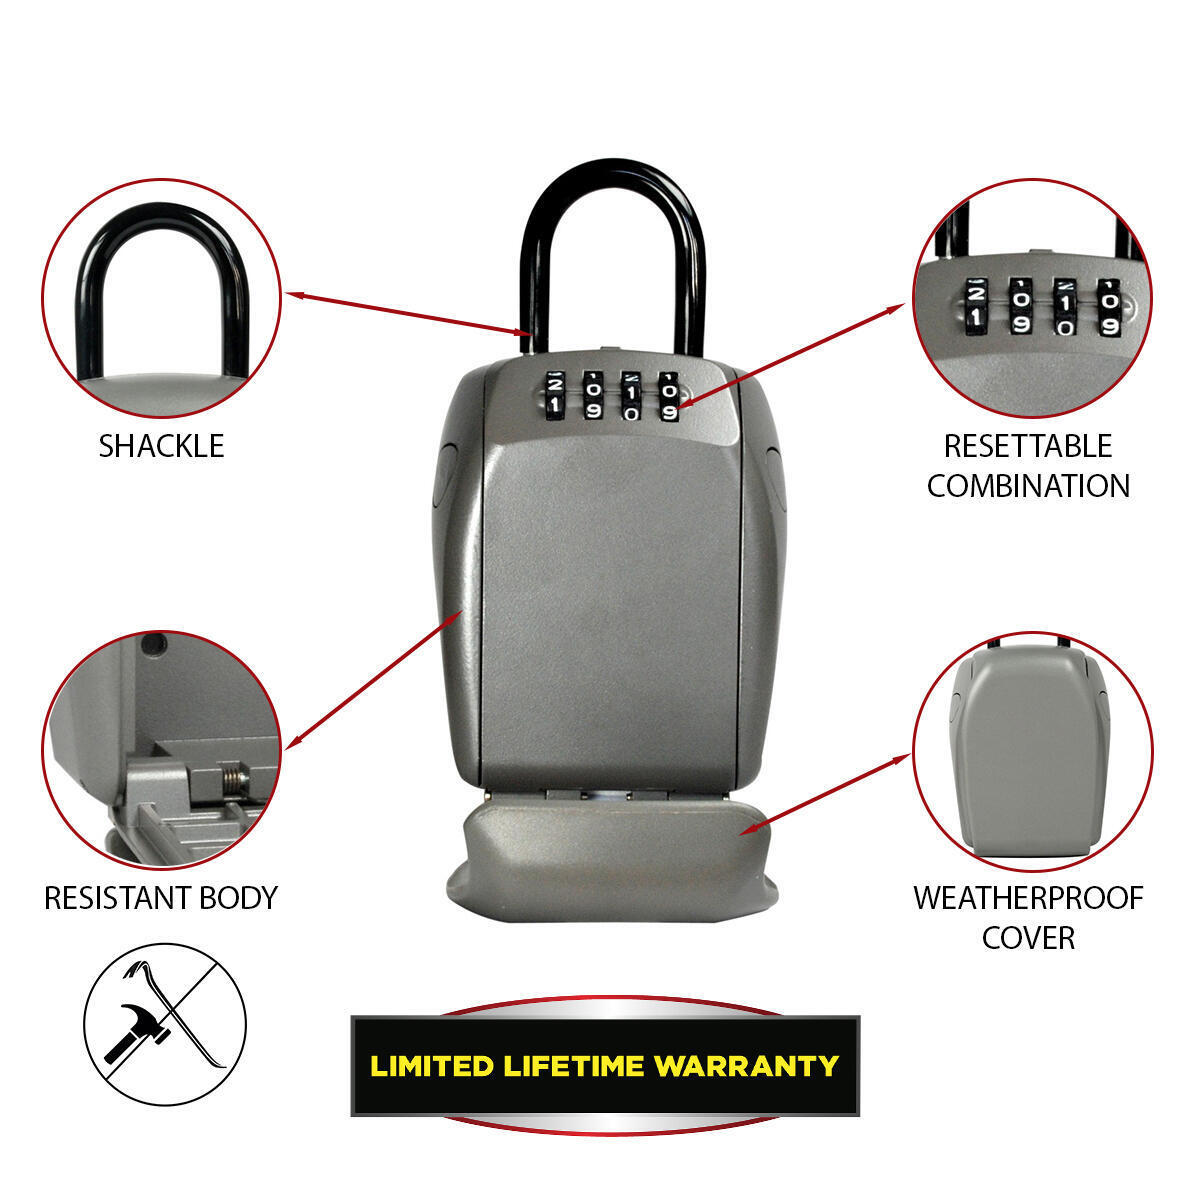 Cassetta di sicurezza per chiavi MASTER LOCK 5414EURD da appendere 10.5 x 13.5 x 4.6 cm - 4